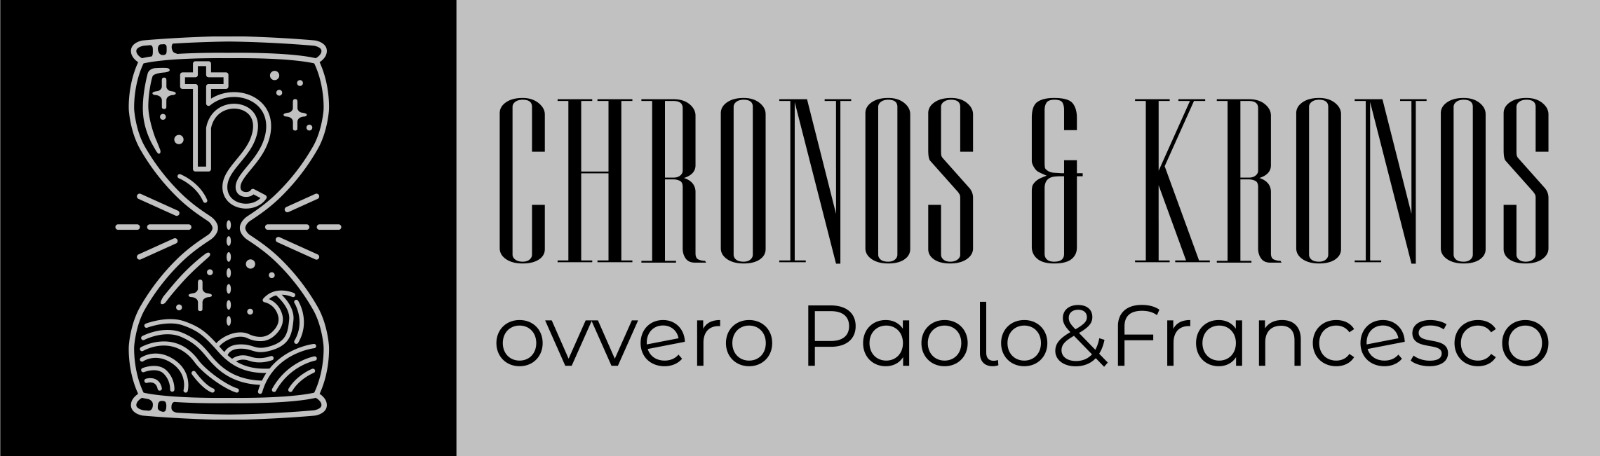 Chronos & Kronos, ovvero Paolo&Francesco - Li ho attesi tutto il giorno Chronos & Kronos, ovvero Paolo&Francesco - Li ho attesi tutto il giorno